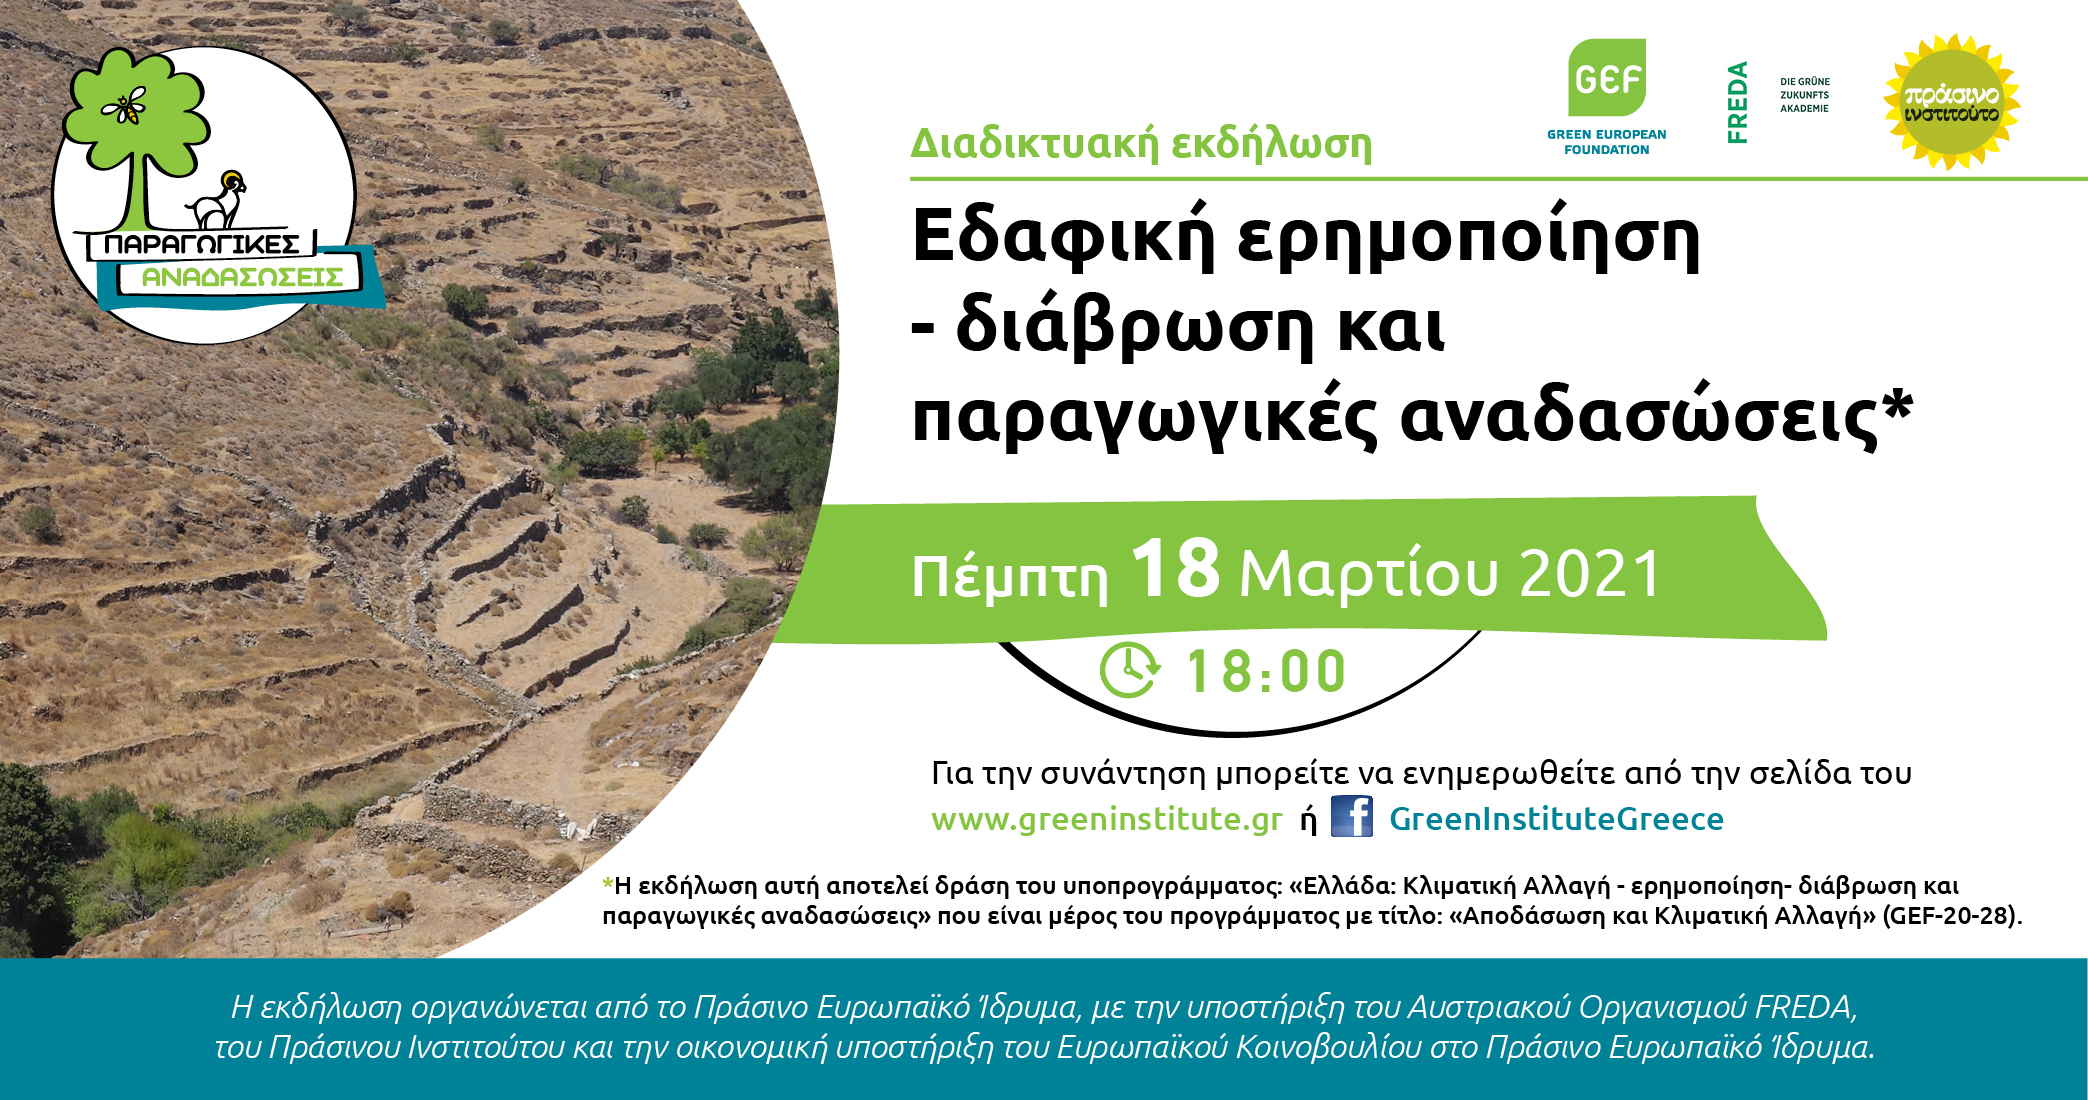 Αθήνα, 12 Μαρτίου 2021 – Το Πράσινο Ινστιτούτο προγραμματίζει την ημερίδα-συνάντηση εργασίας «Εδαφική ερημοποίηση-διάβρωση και παραγωγικές αναδασώσεις», που θα διεξαχθεί διαδικτυακά την Πέμπτη 18-03-2021 και ώρα 18:00 μμ. Η ημερίδα […]